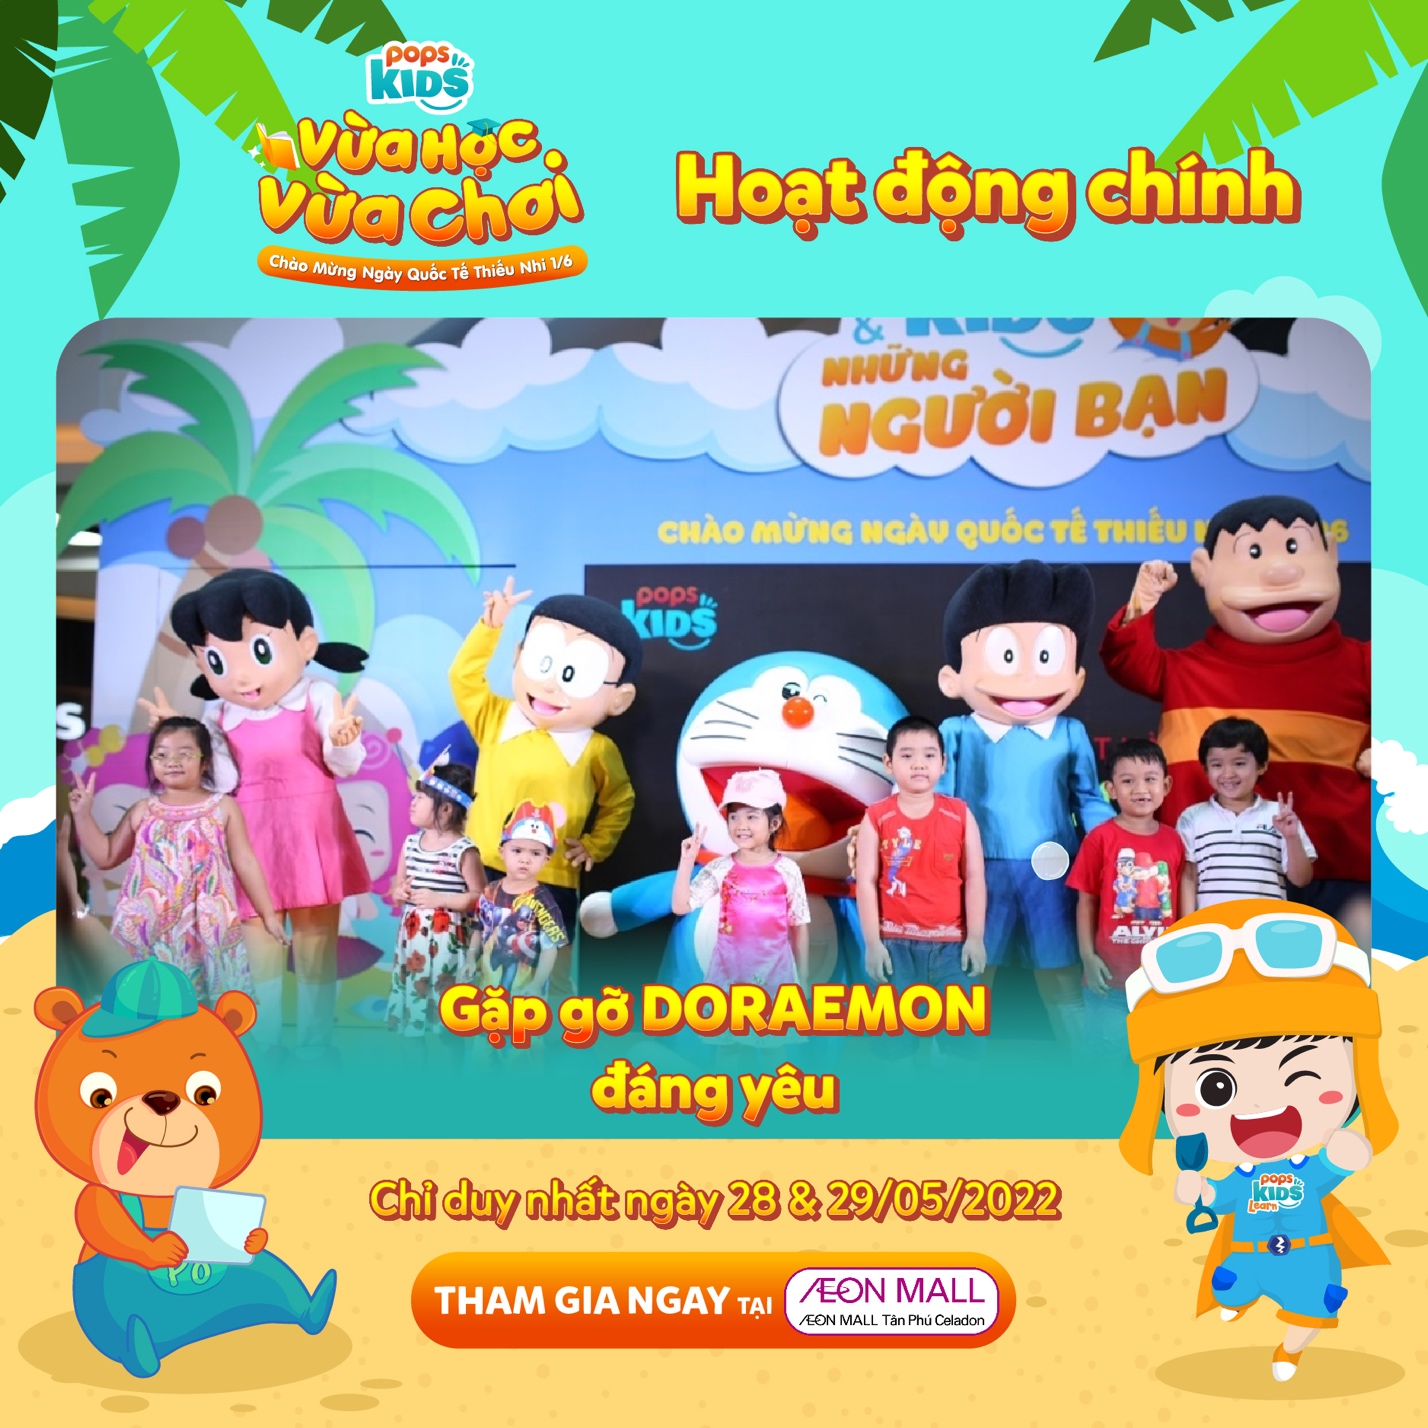 POPS Kids trở lại, dẫn đội quân Pikachu, Doraemon đến thăm các bé vào Quốc tế Thiếu nhi - Ảnh 2.